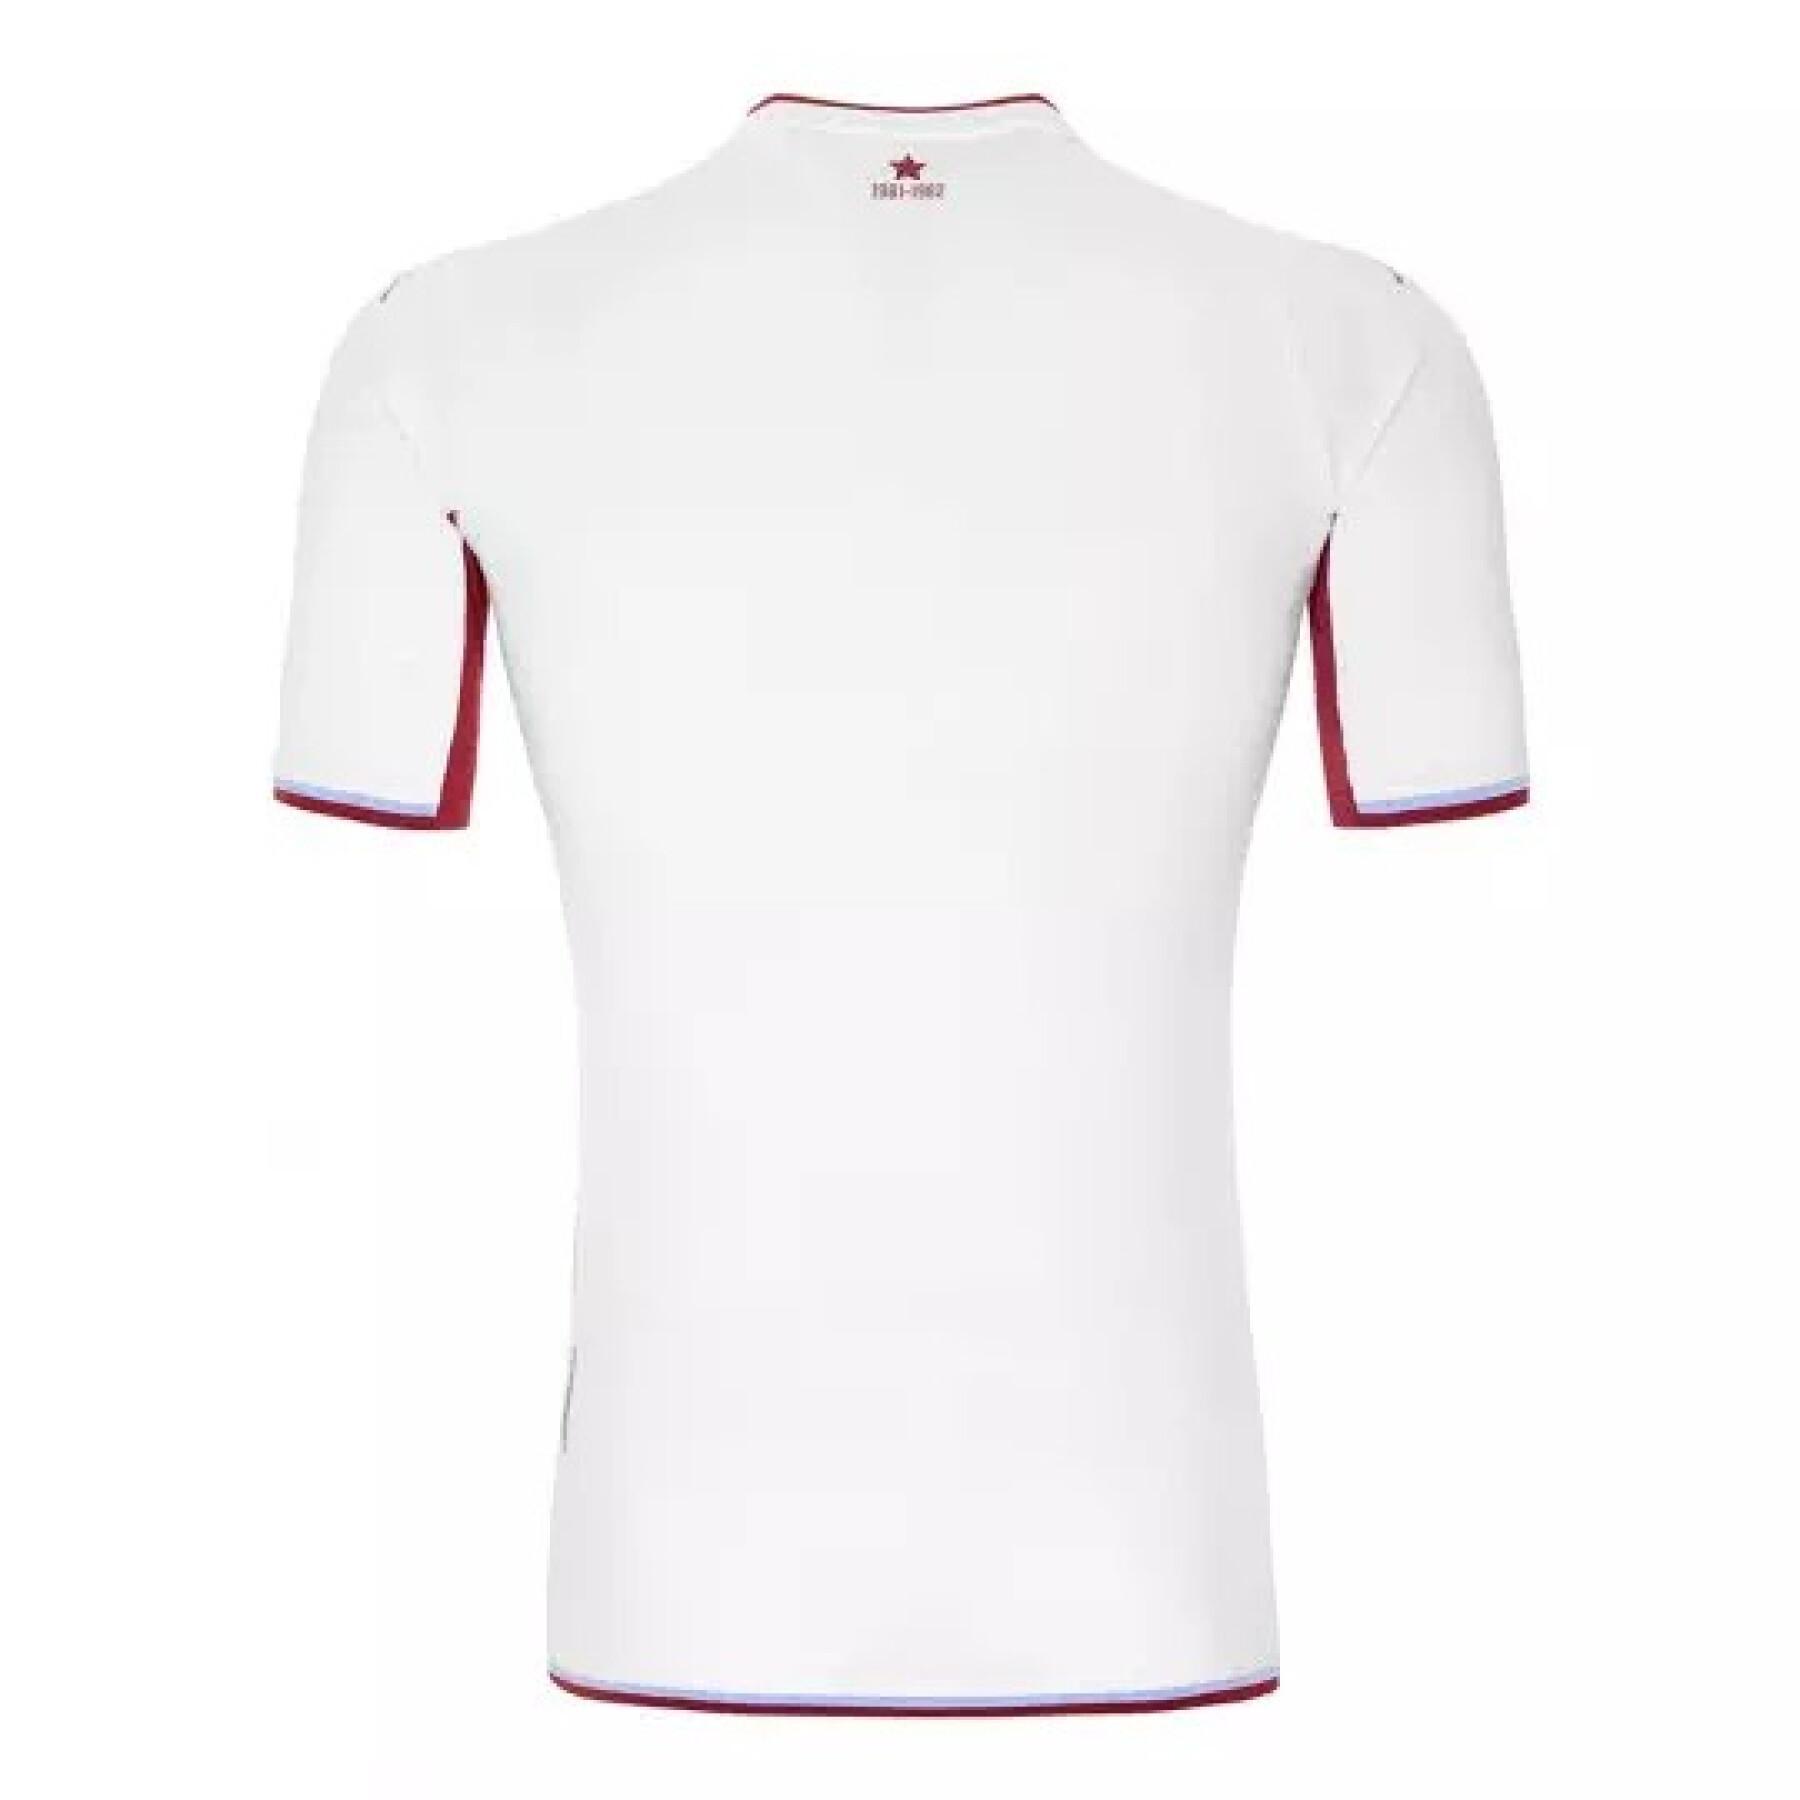 Autentyczna koszulka zewnętrzna Aston Villa FC 2021/22